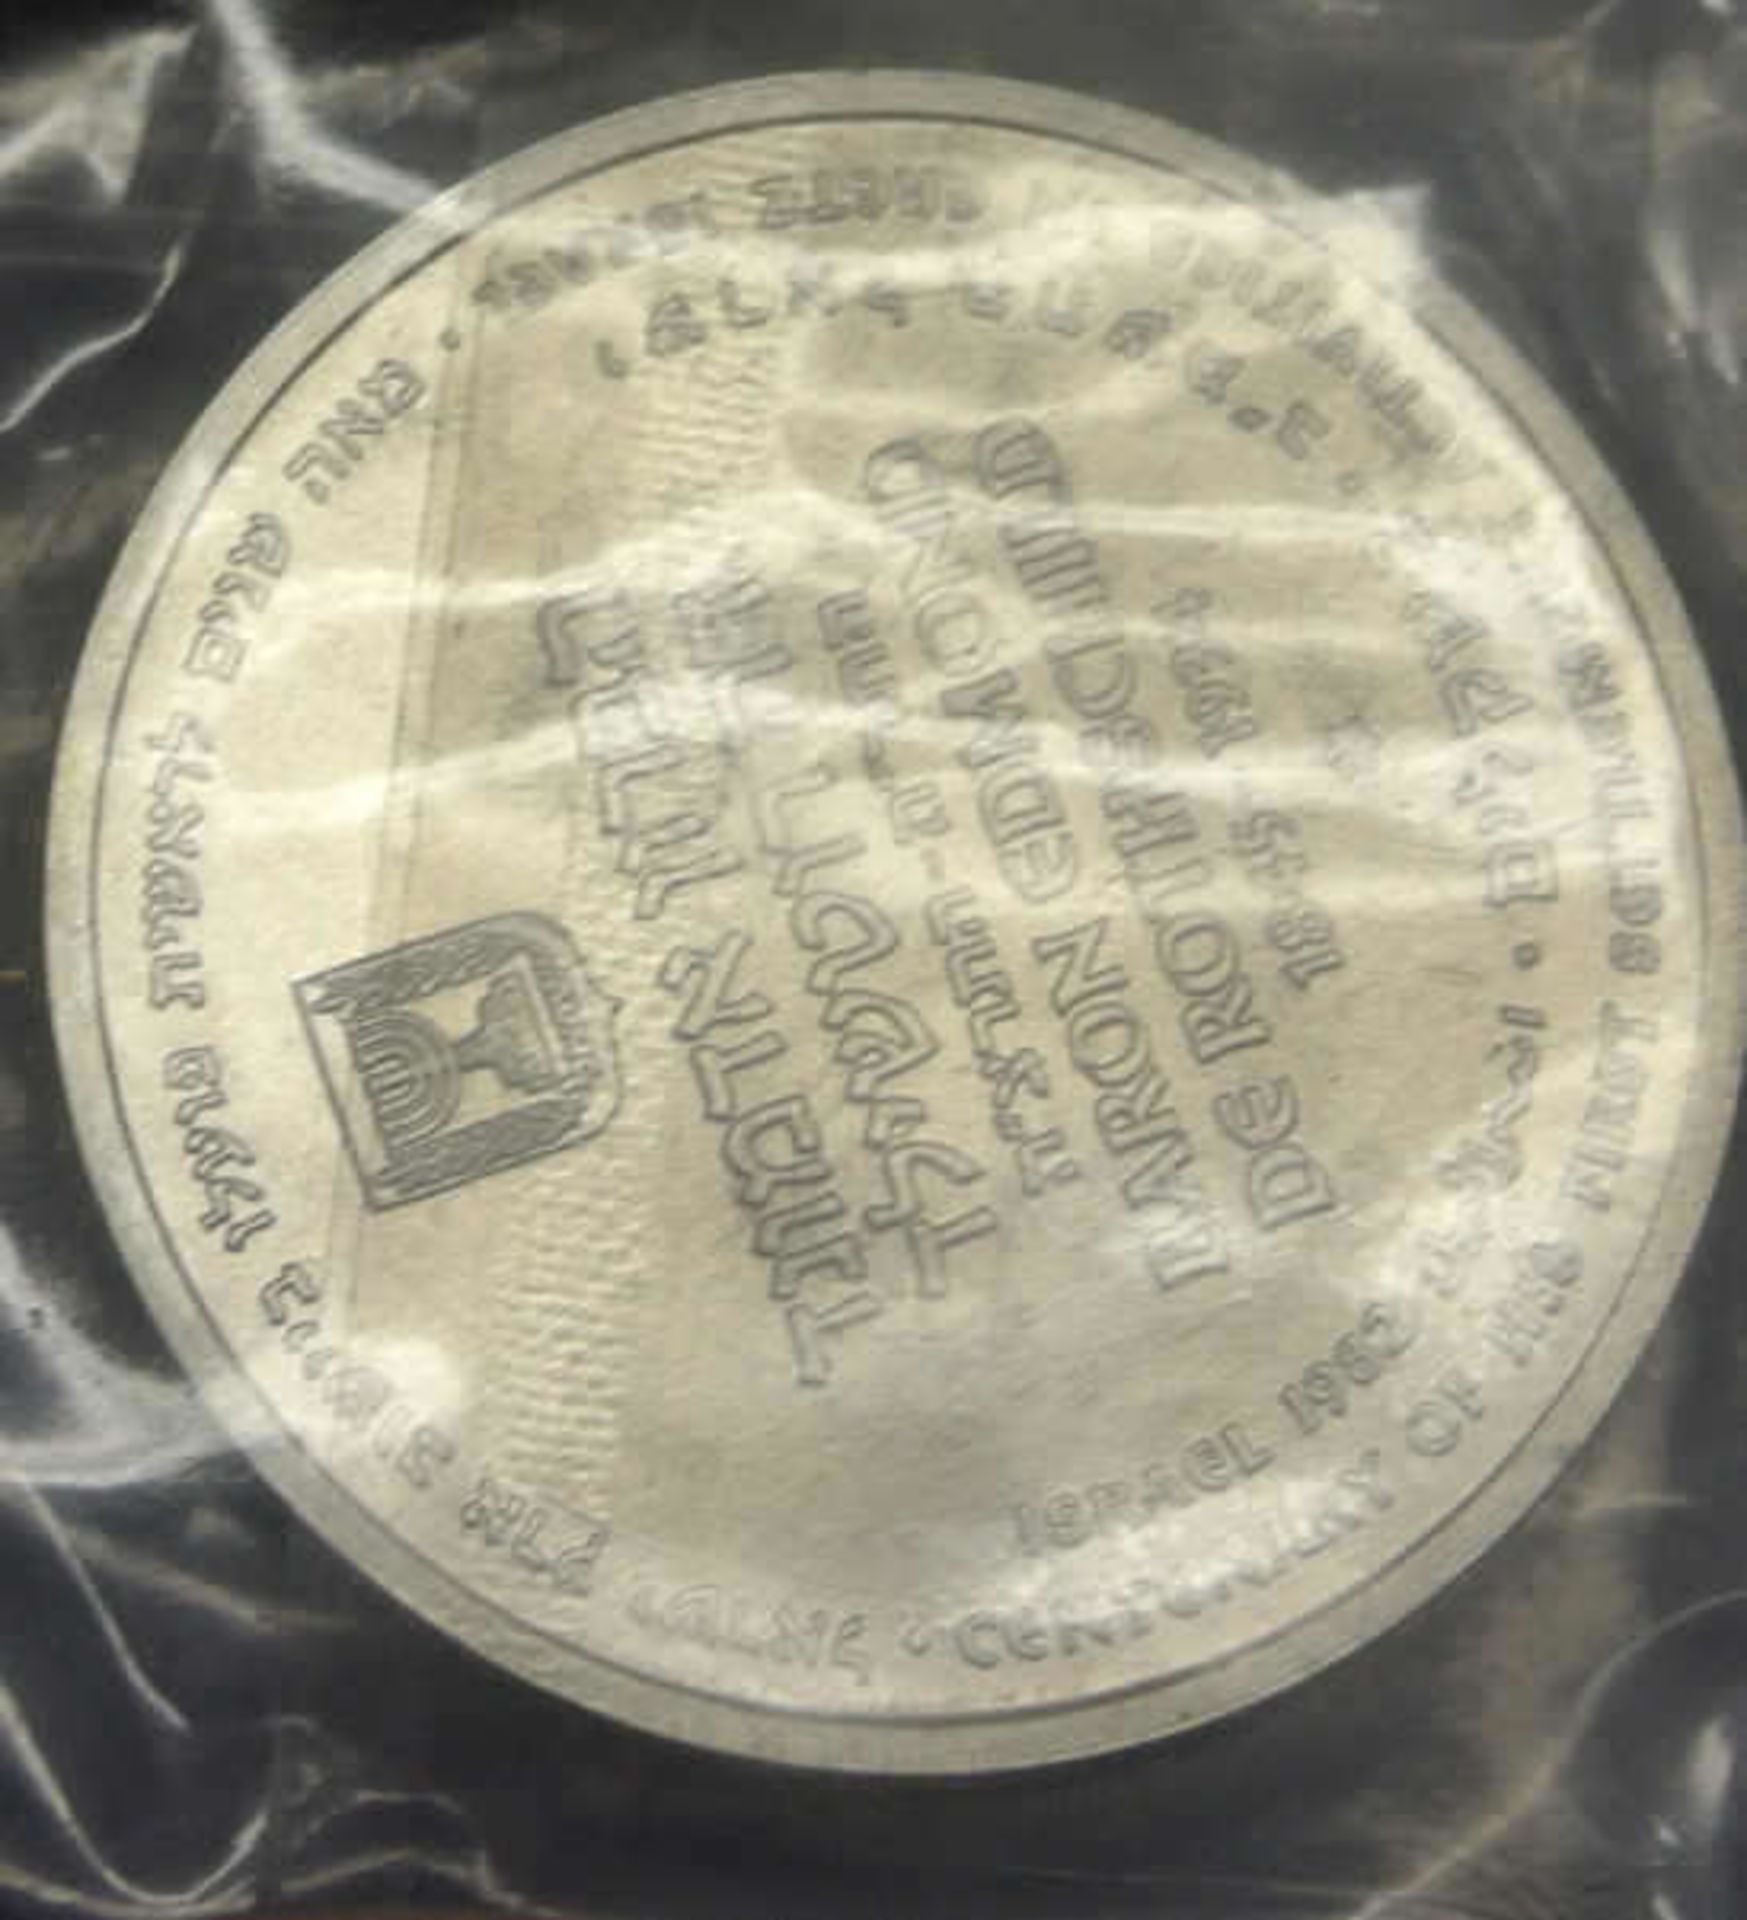 Israel, Silbermünze, 1982, Baron Rothschild, polierte Platte. In Original Verpackung mit